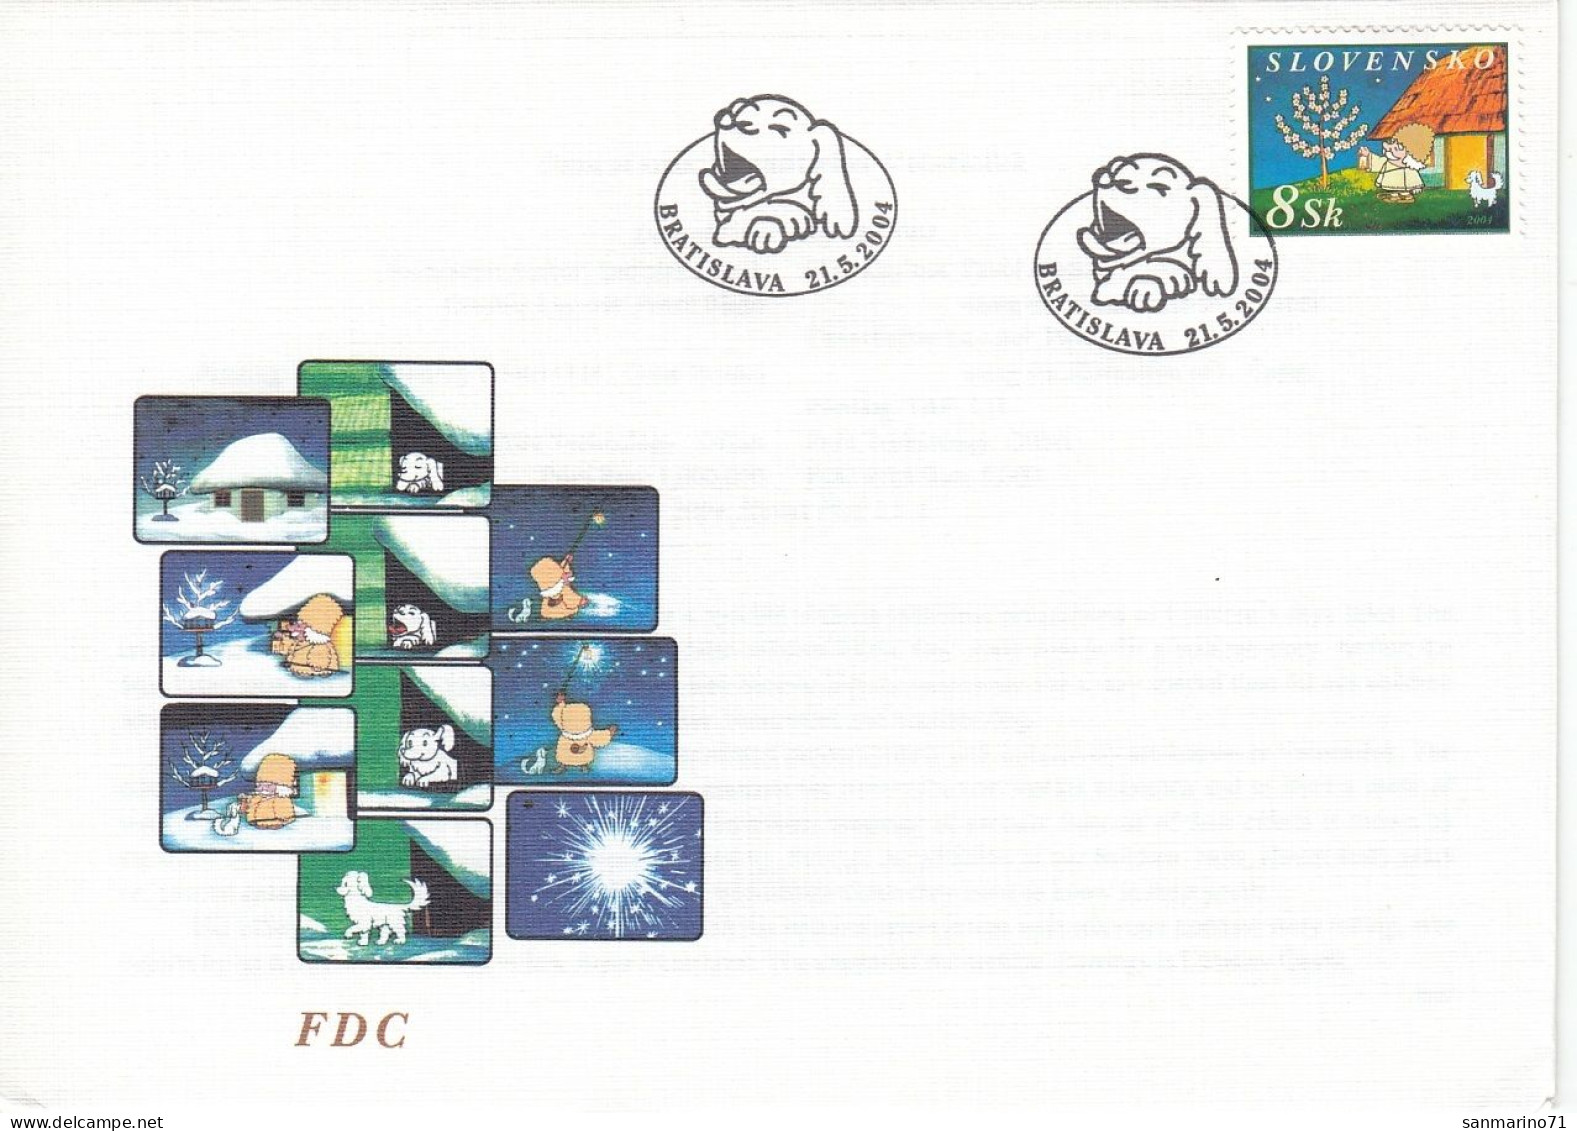 FDC SLOVAKIA 486 - FDC